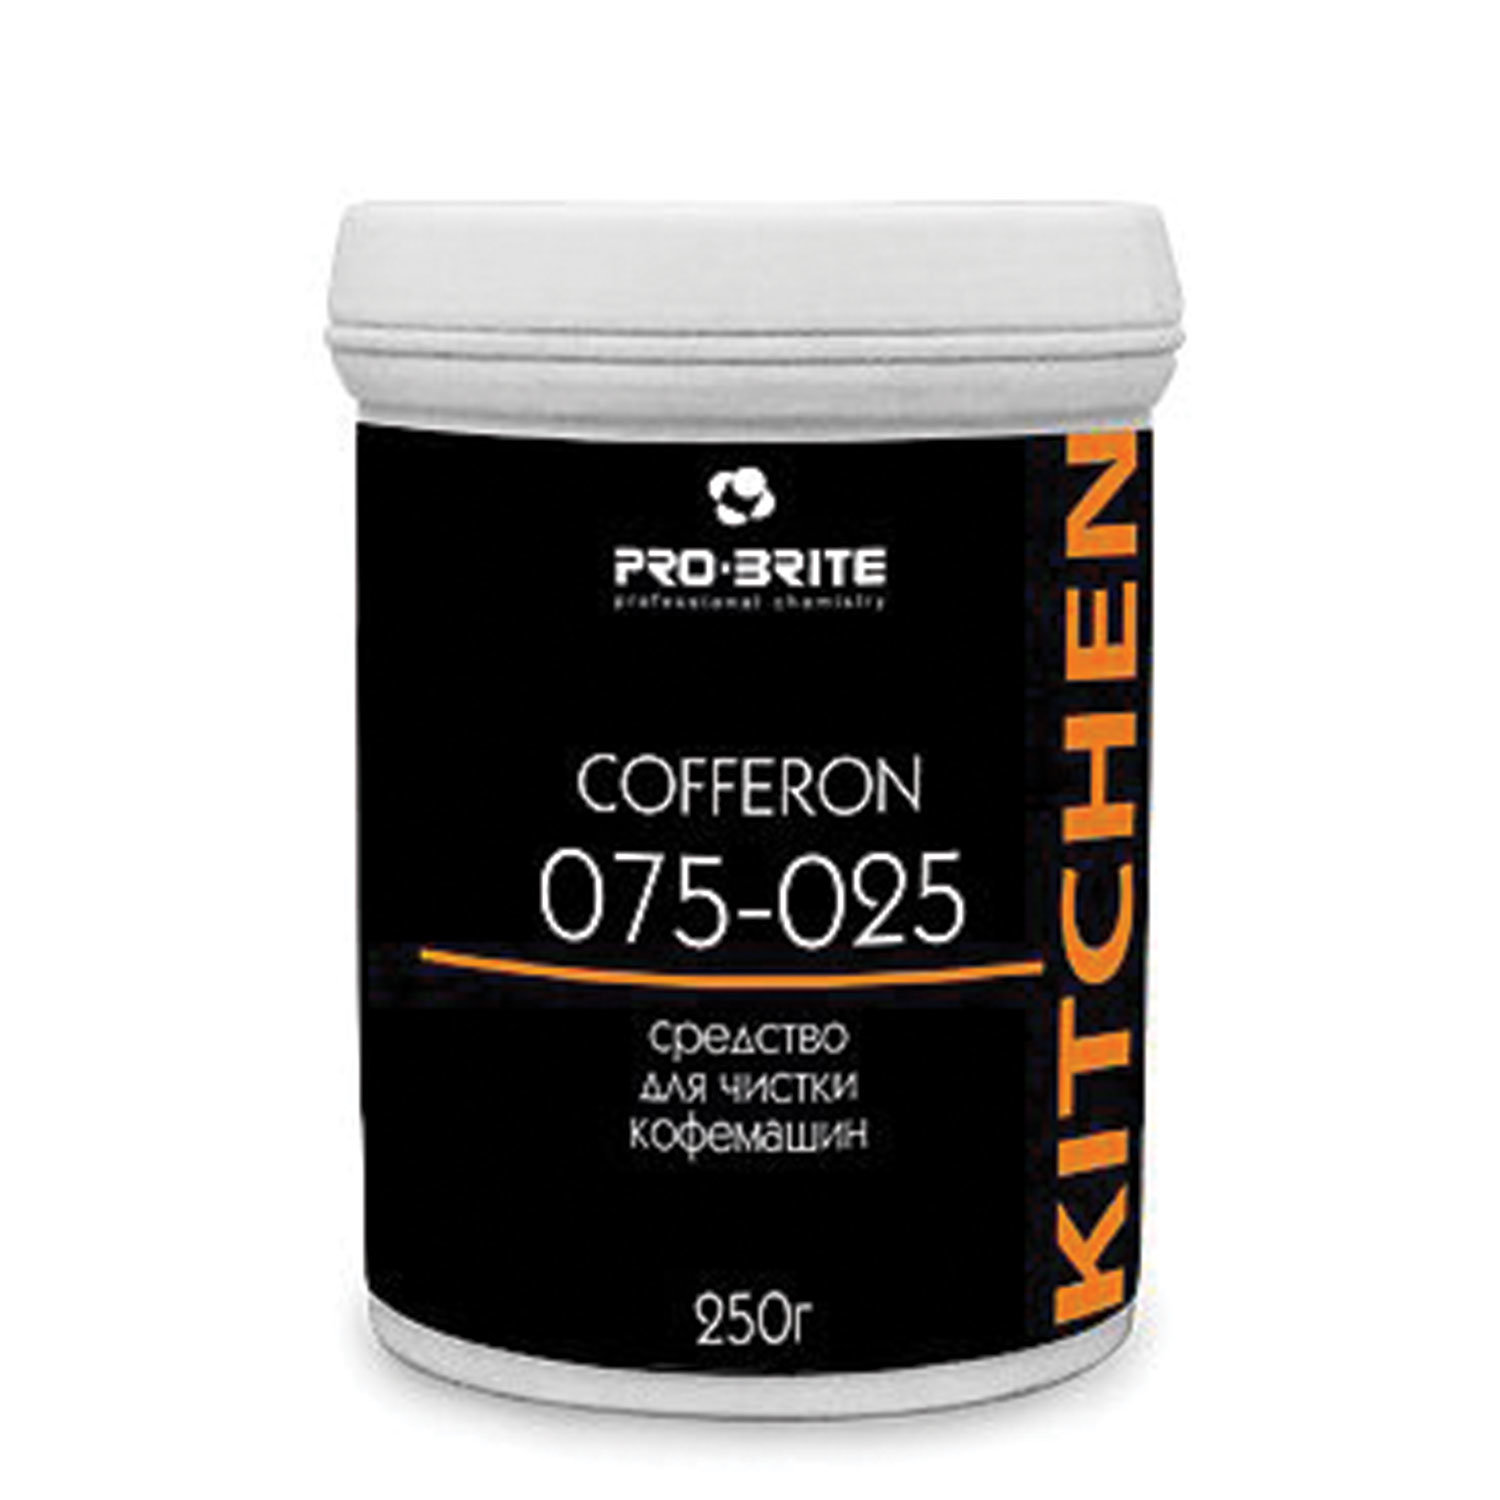 PRO-BRITE Чистящее средство для кофемашин и кофеварок 250 г, PRO-BRITE COFFERON, порошок, банка, 075-025